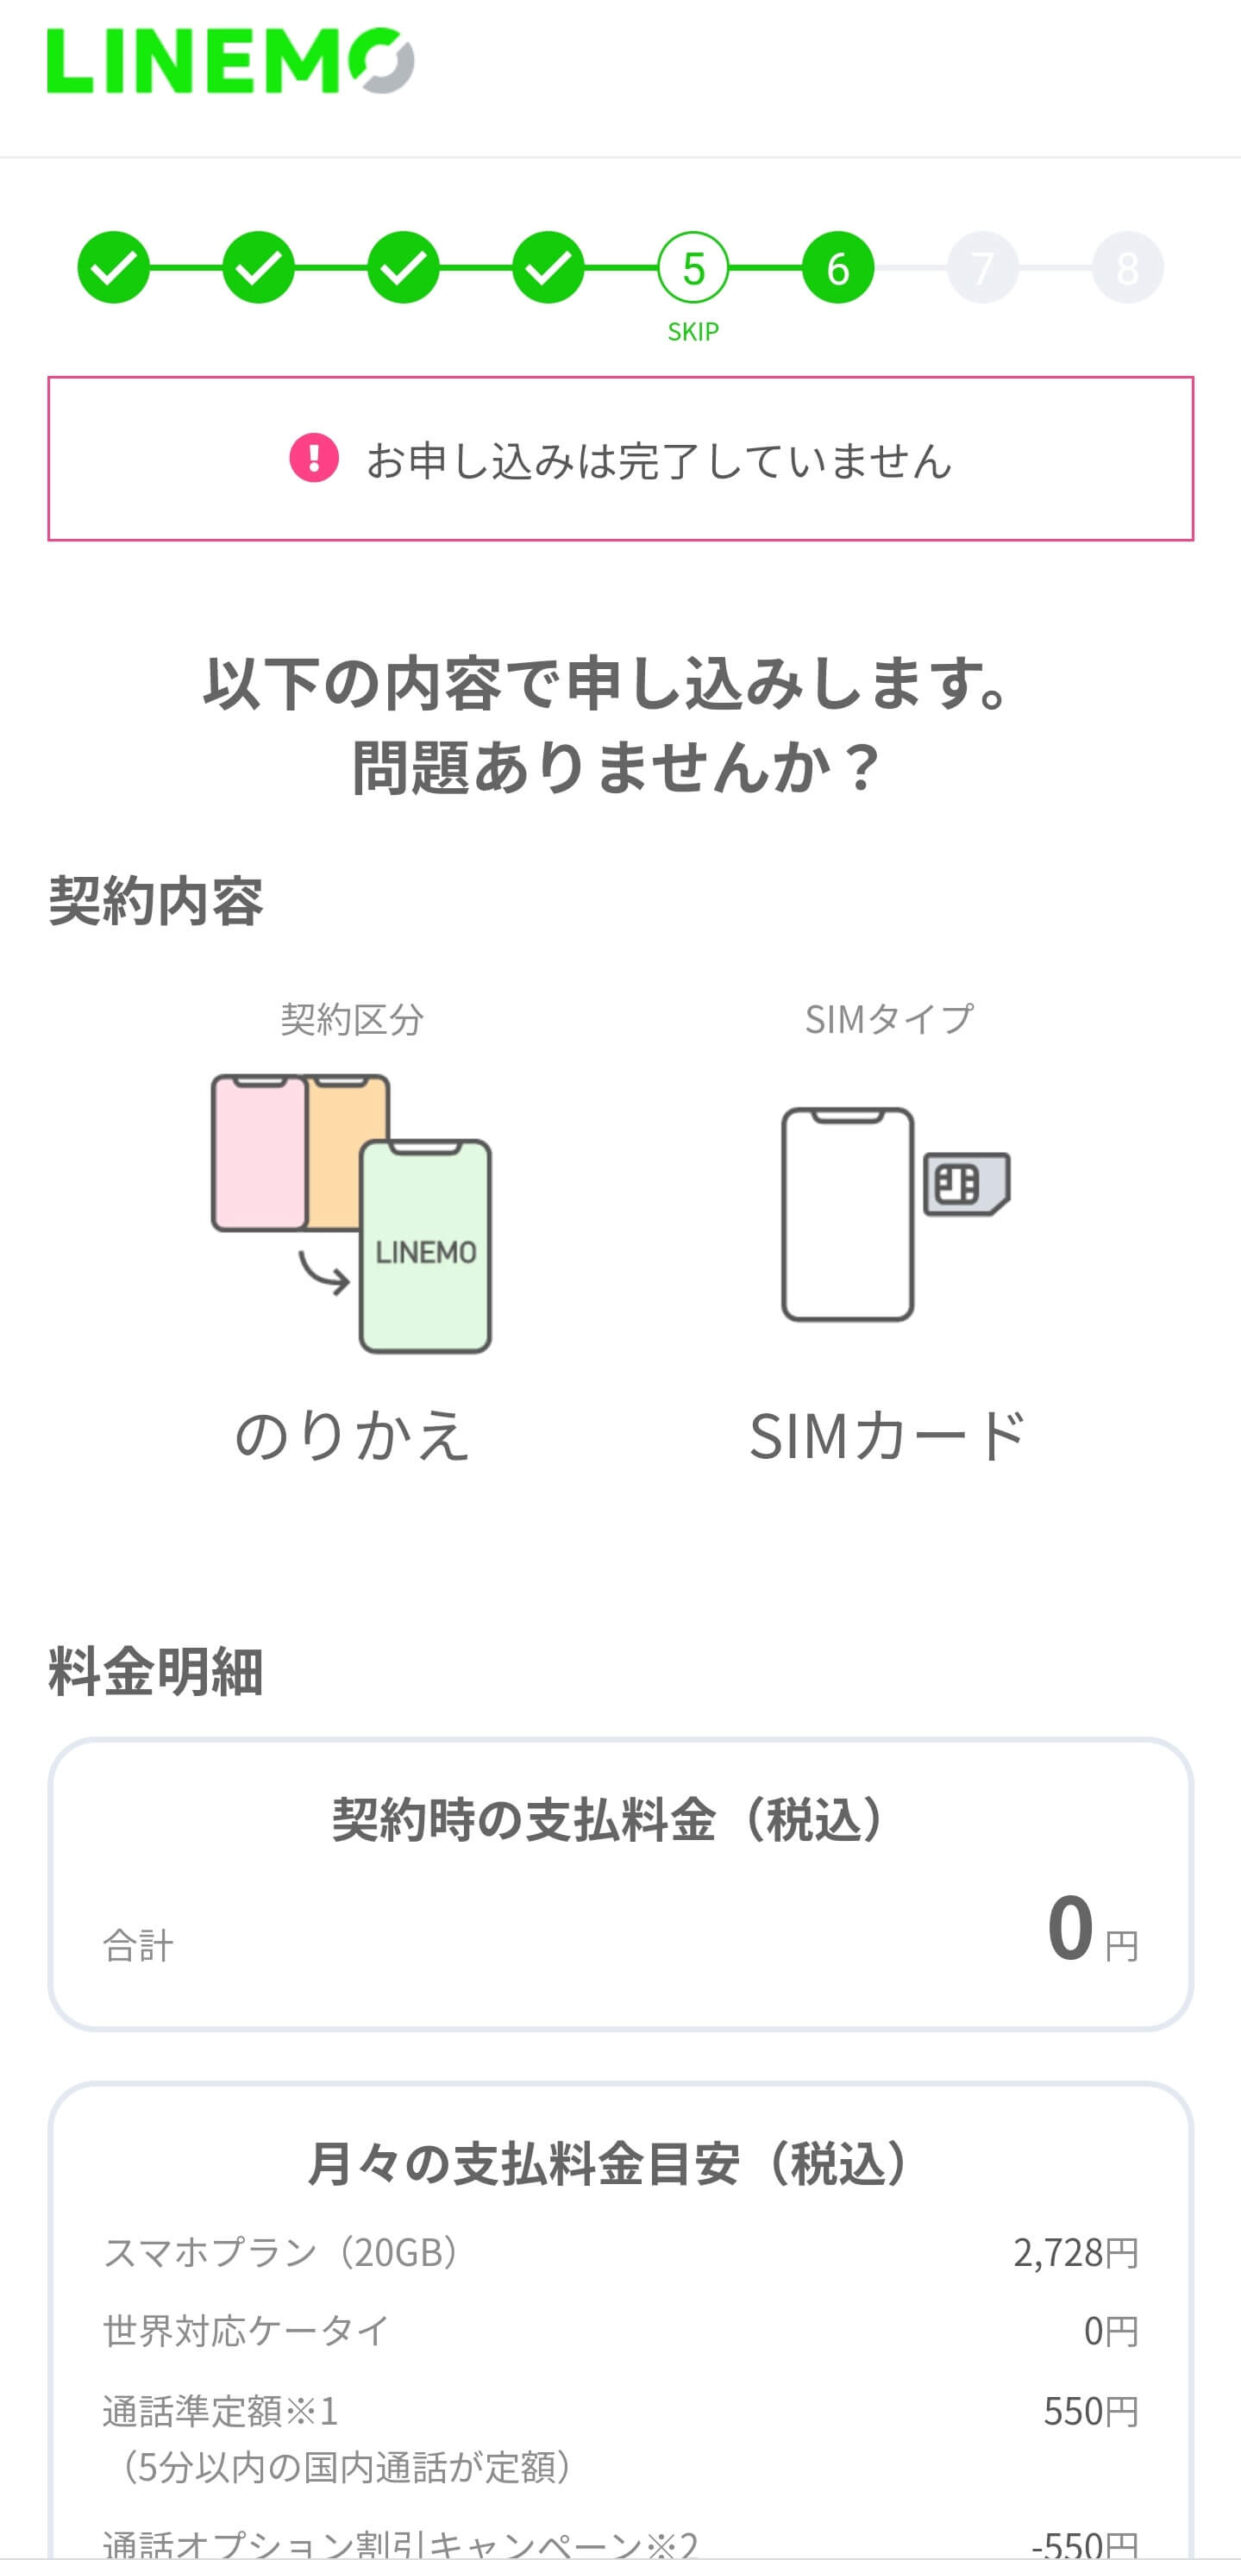 【保存版】楽天モバイルからLINEMOに乗り換え（MNP）するやり方手順 linemo-application-21-scaled-1